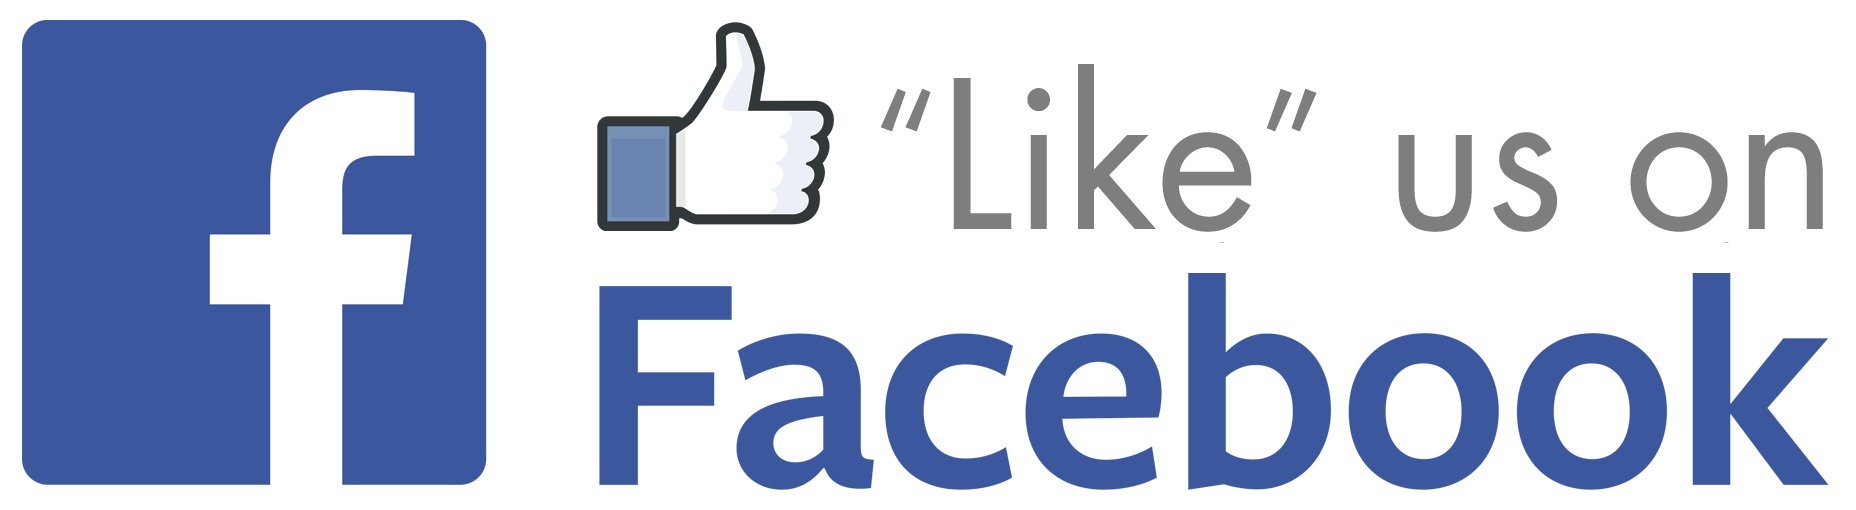 Like Us On Facebook Small Logo - like-us-on-facebook-logo_306199 - Skee-Ball